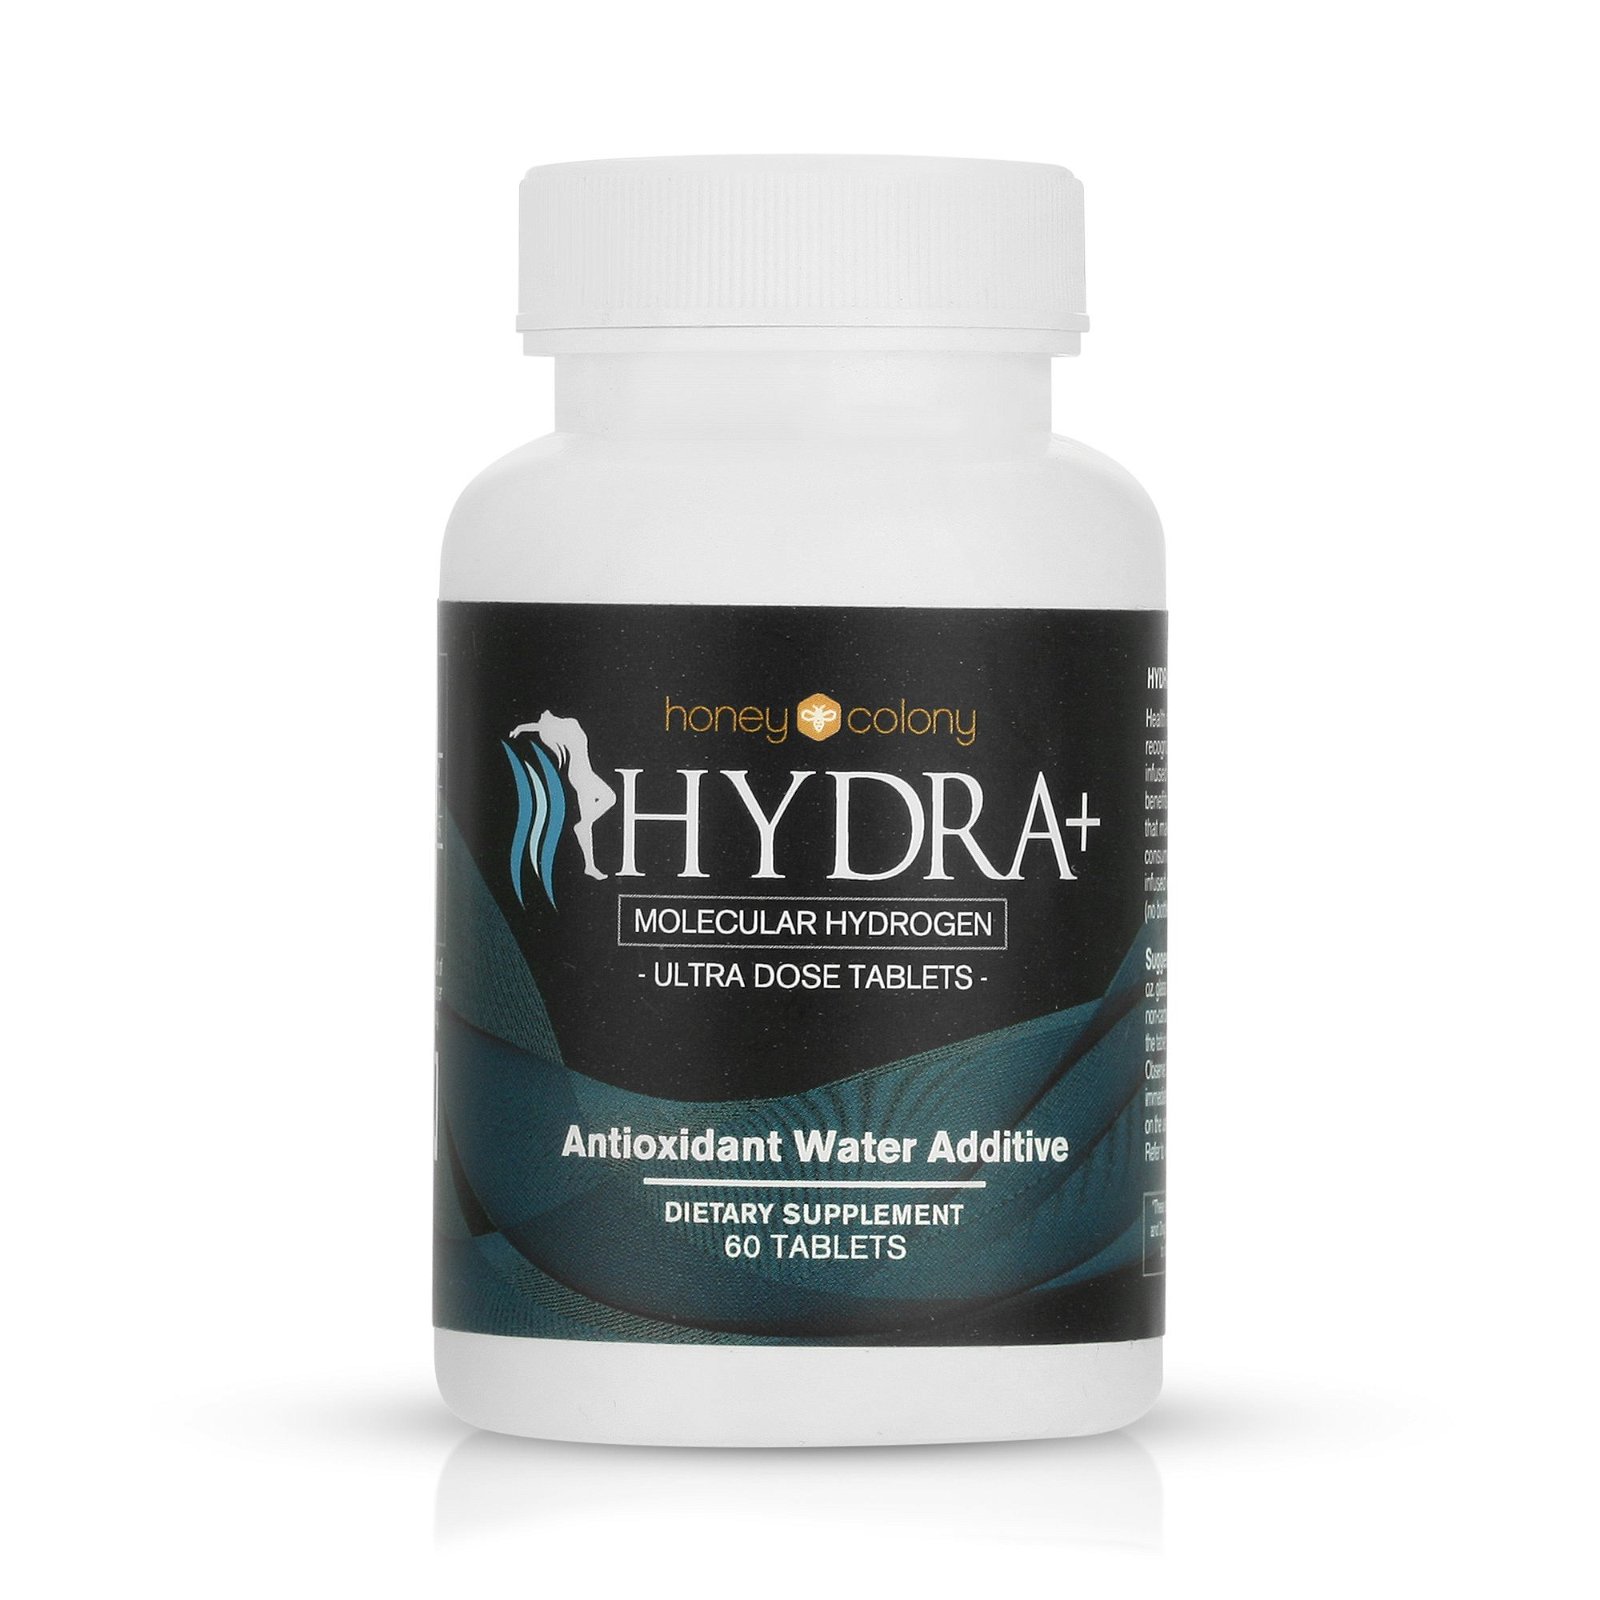 Image of Hydra+ Molecular Hydrogen Ultra Dose